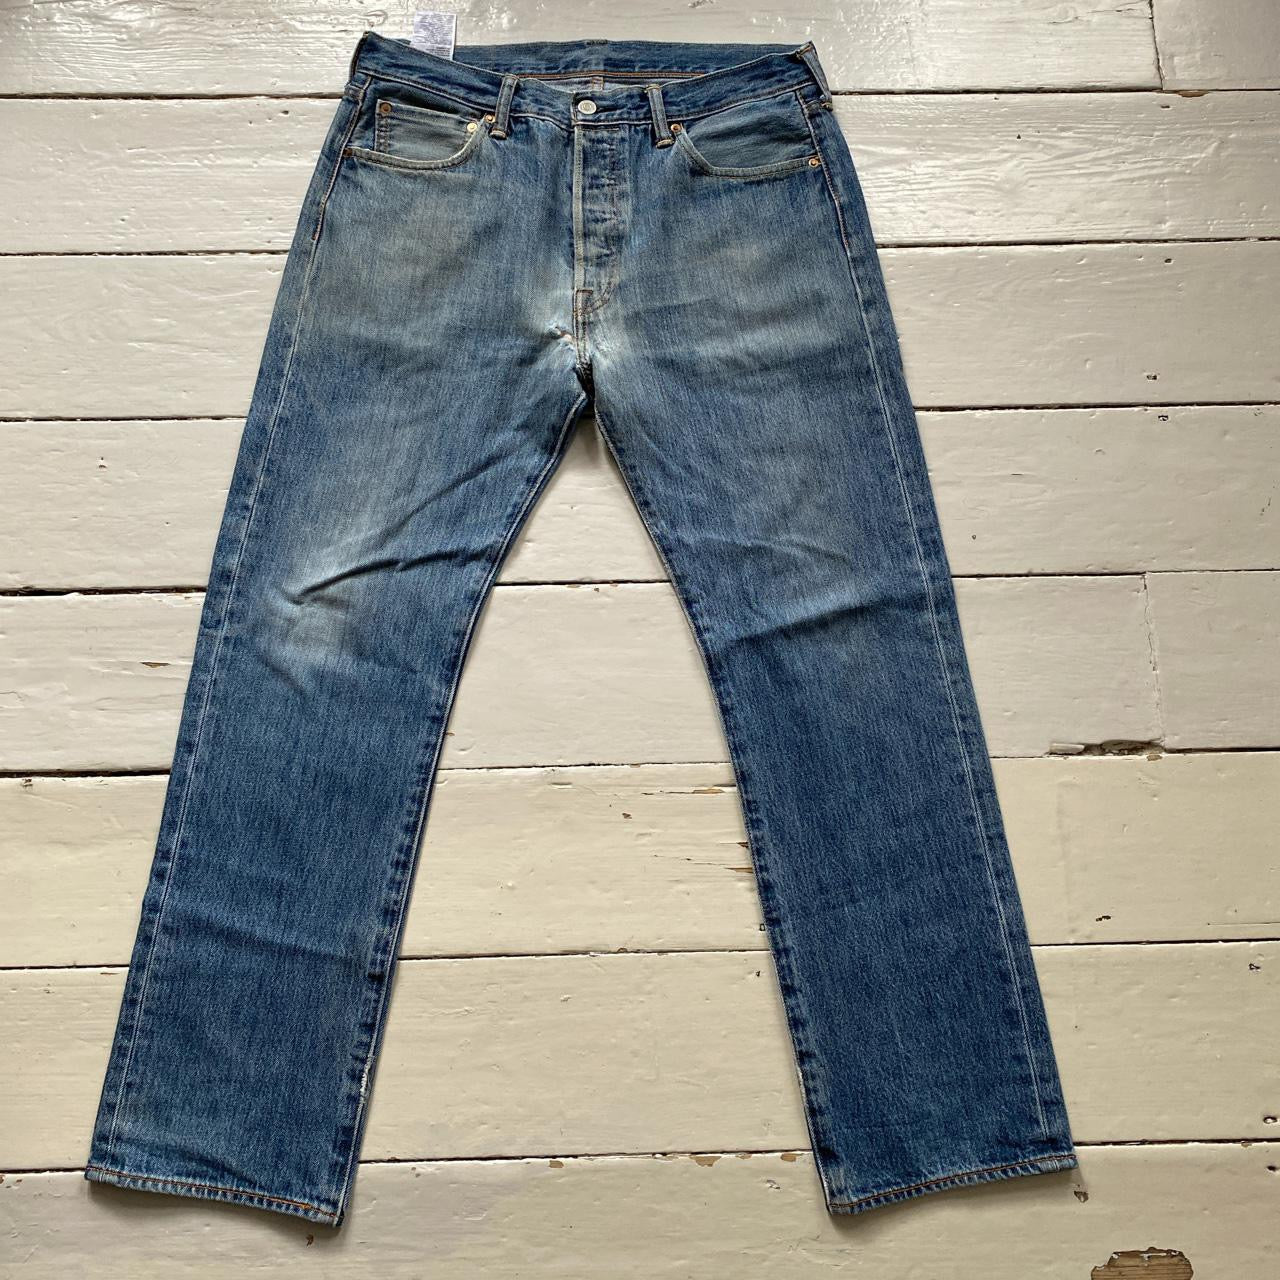 Levis 501 Classic Light Jeans (34/30)